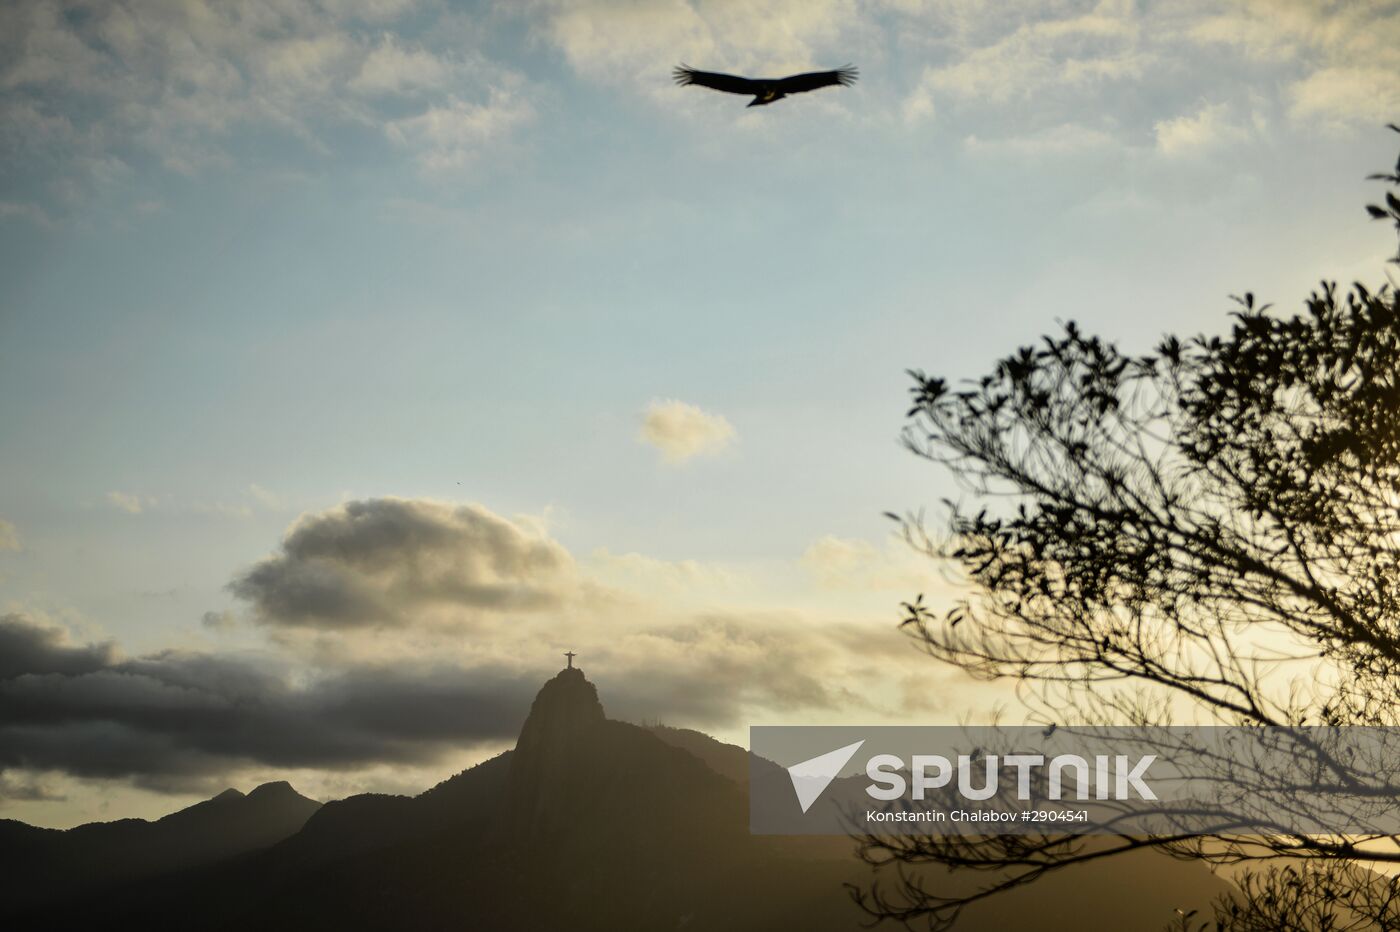 Rio de Janeiro: Sugarloaf Mountain views